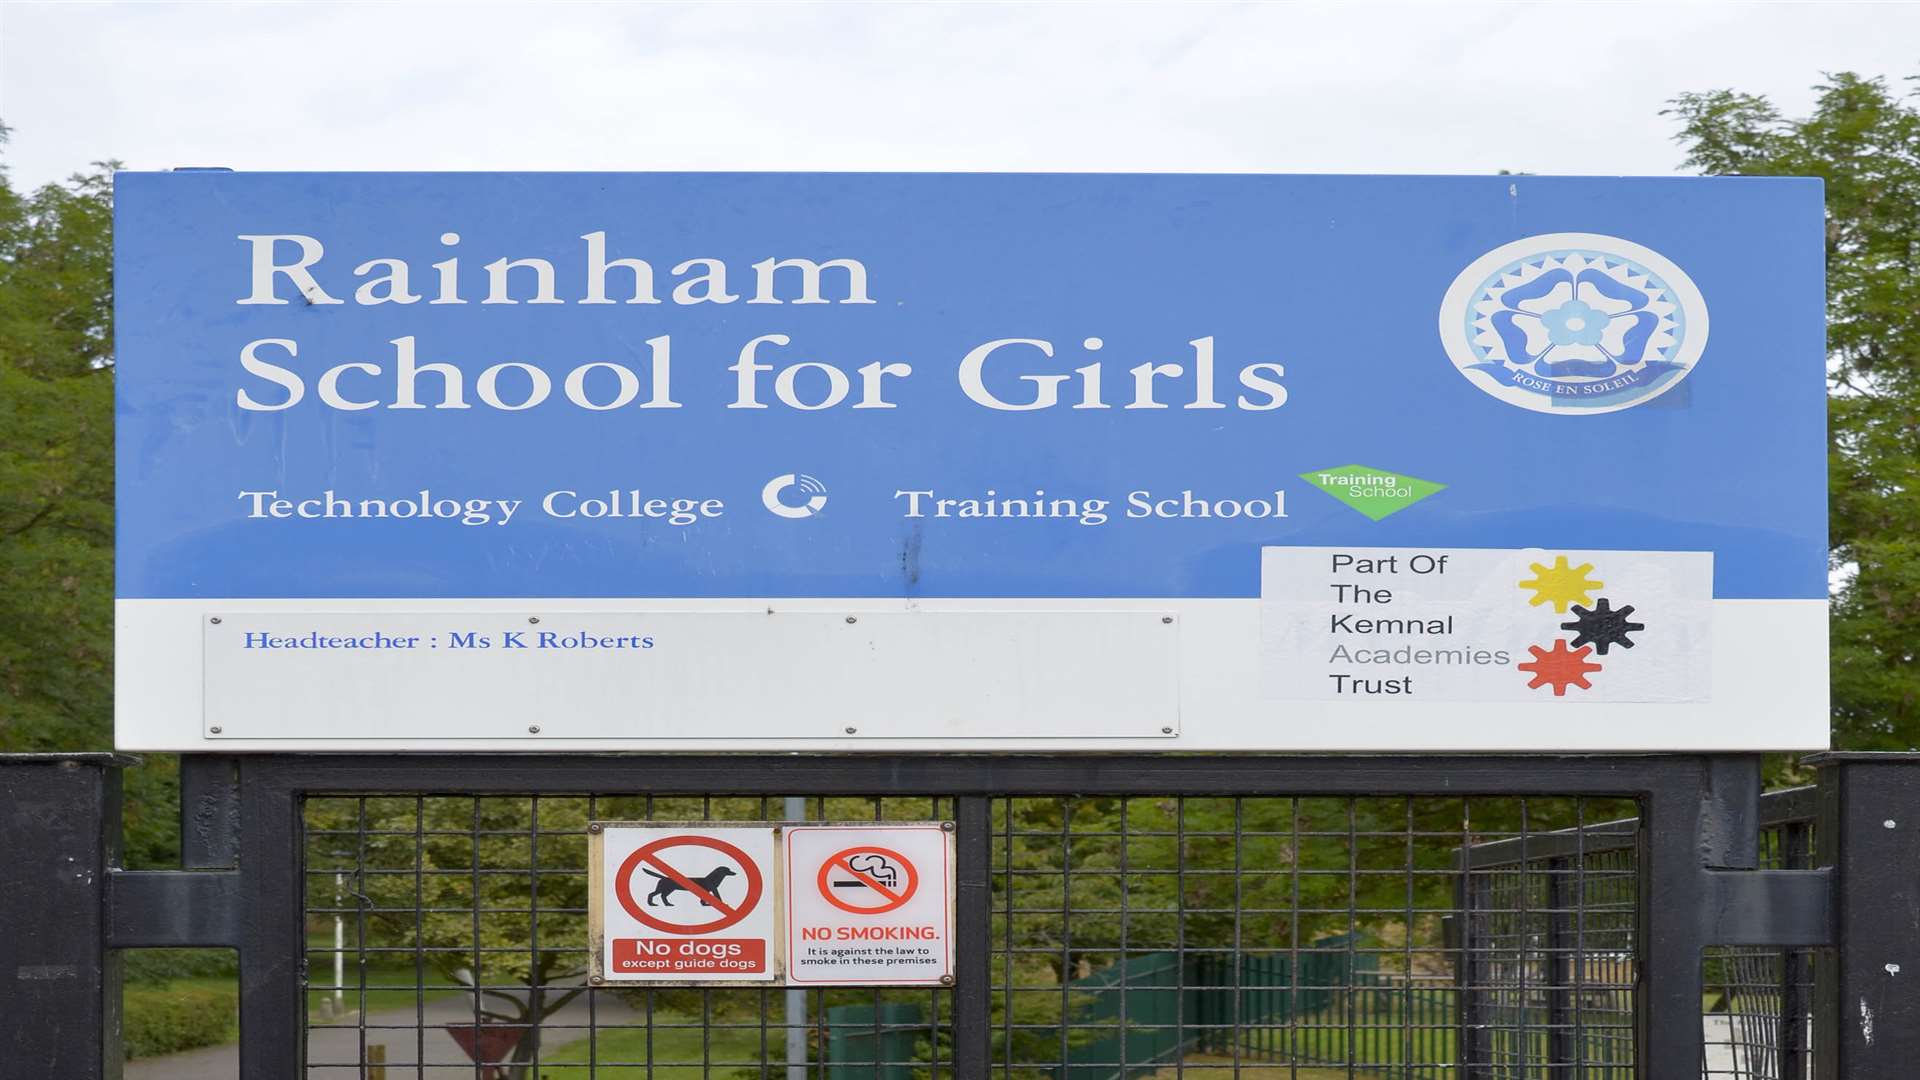 Rainham School for Girls in Derwent Way